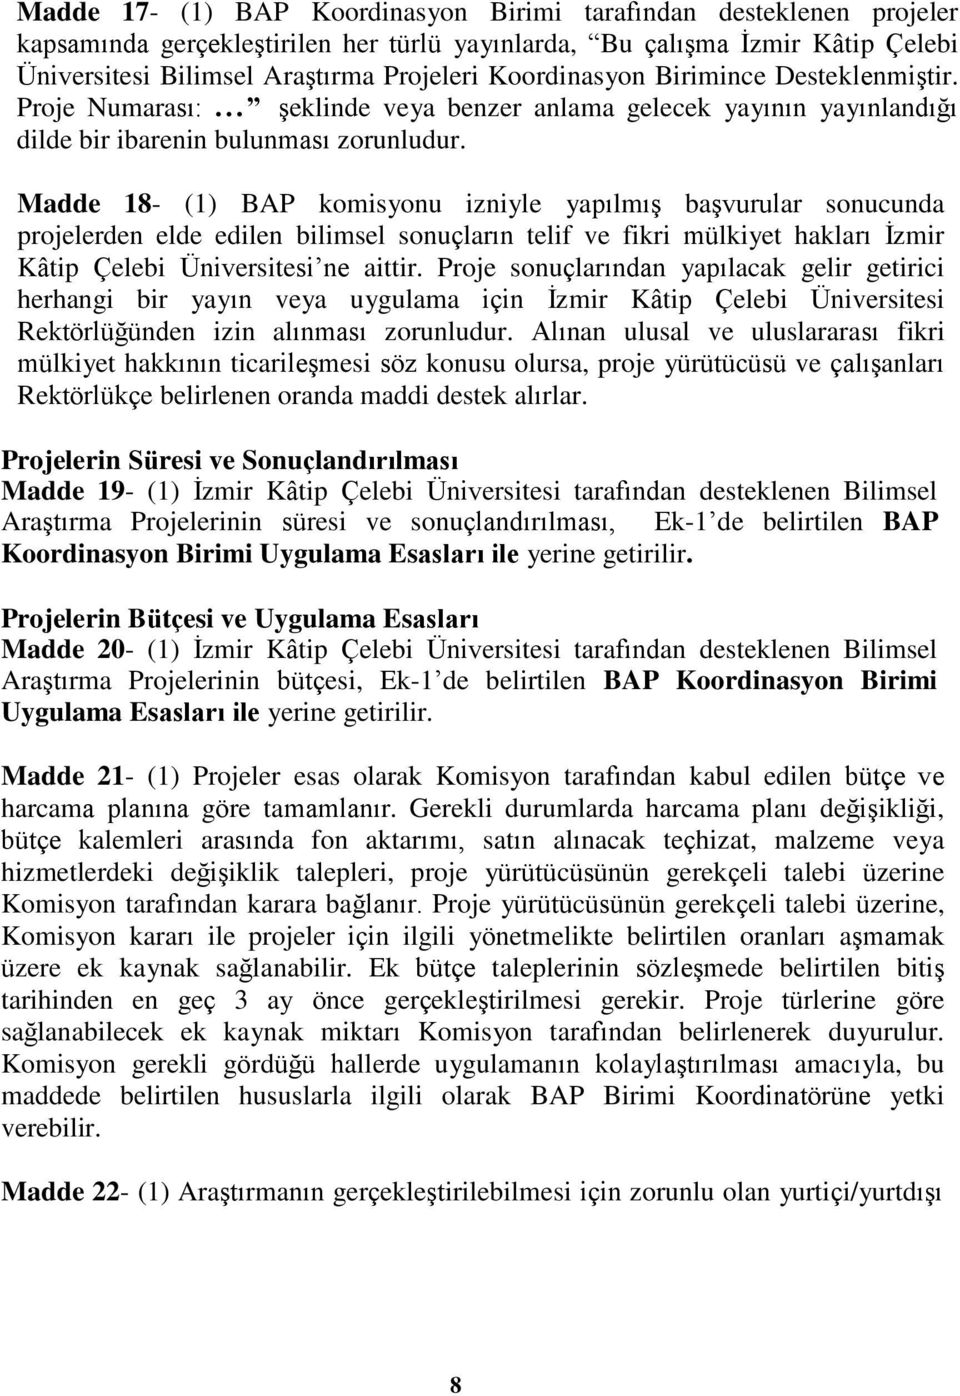 Madde 18- (1) BAP komisyonu izniyle yapılmış başvurular sonucunda projelerden elde edilen bilimsel sonuçların telif ve fikri mülkiyet hakları İzmir Kâtip Çelebi Üniversitesi ne aittir.